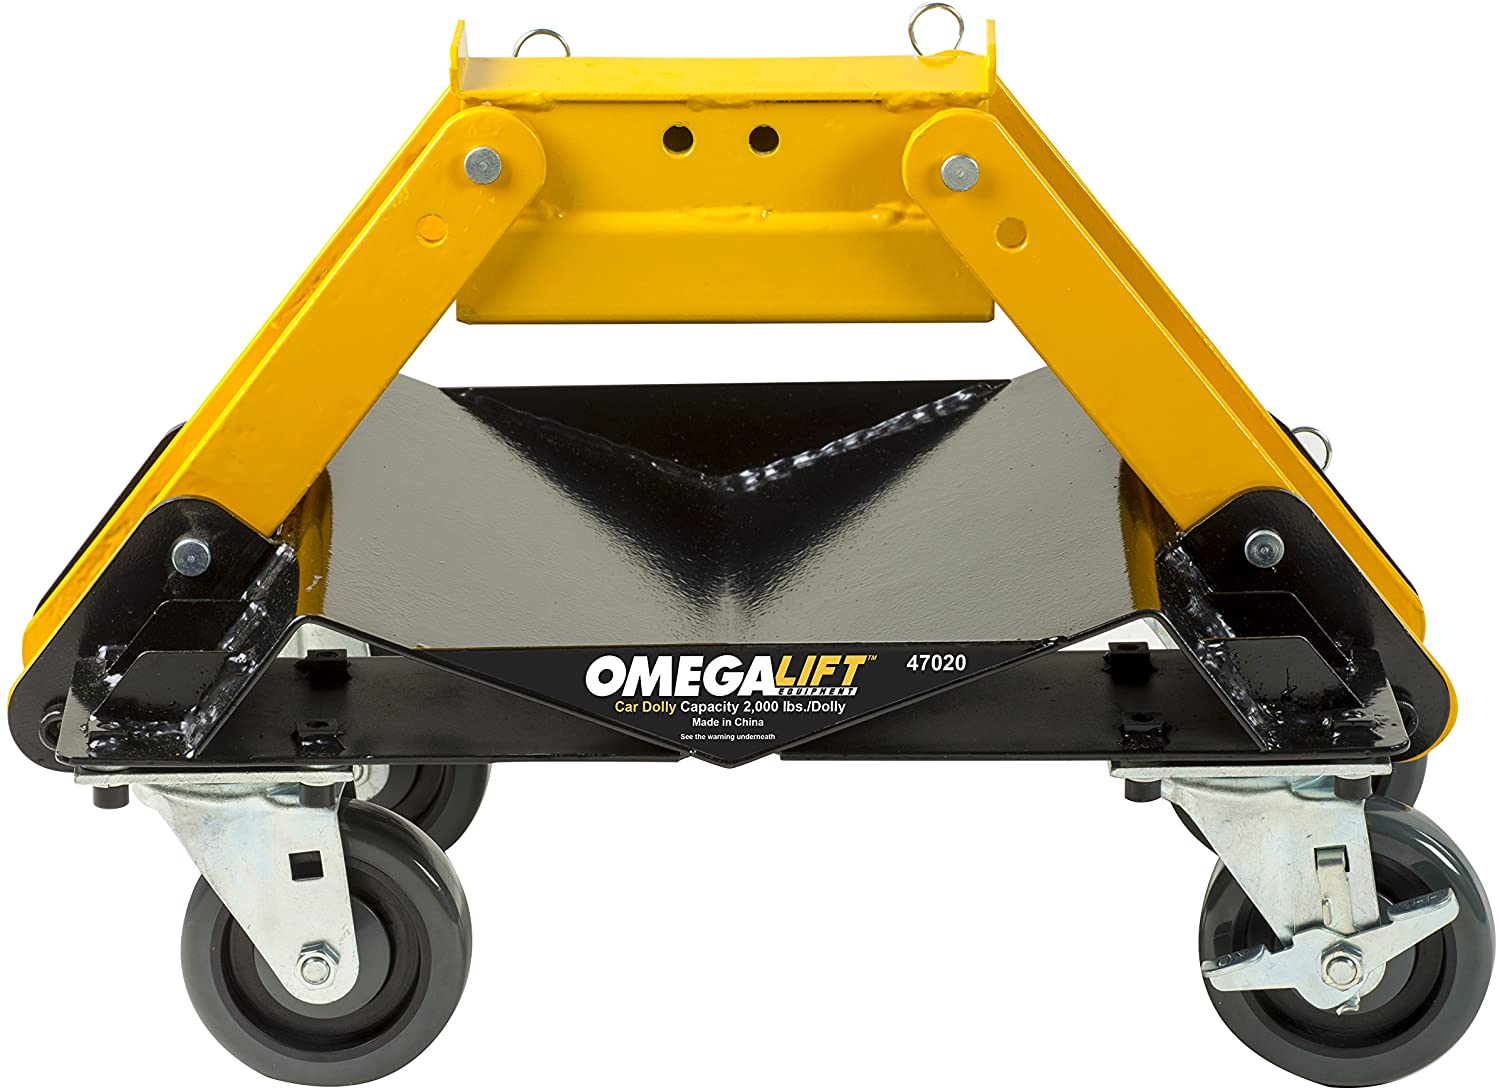 Omega 47020 - Shop Tools Outlet